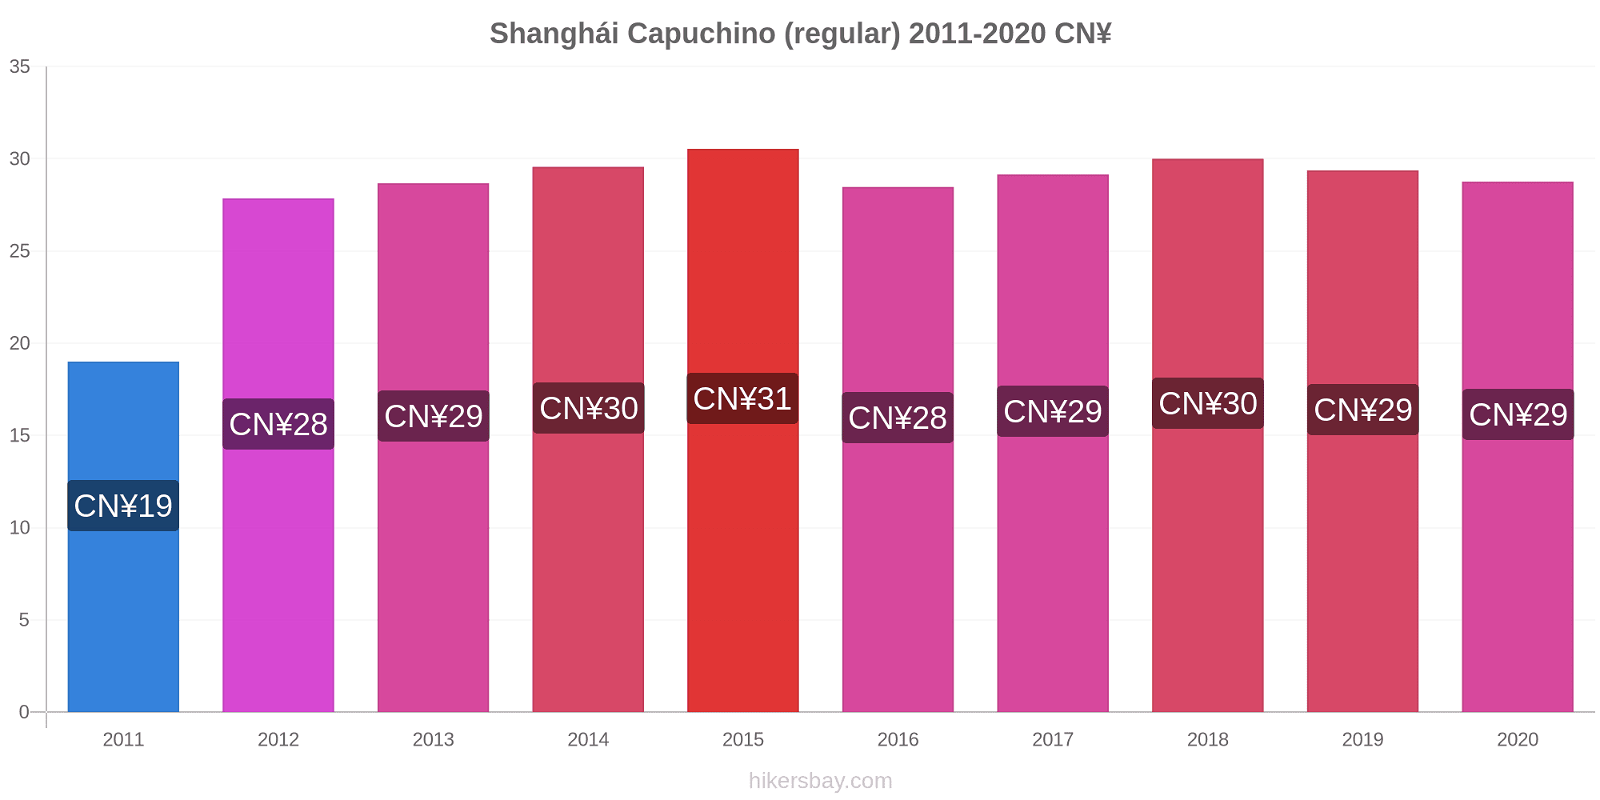 Shanghái cambios de precios Capuchino (regular) hikersbay.com